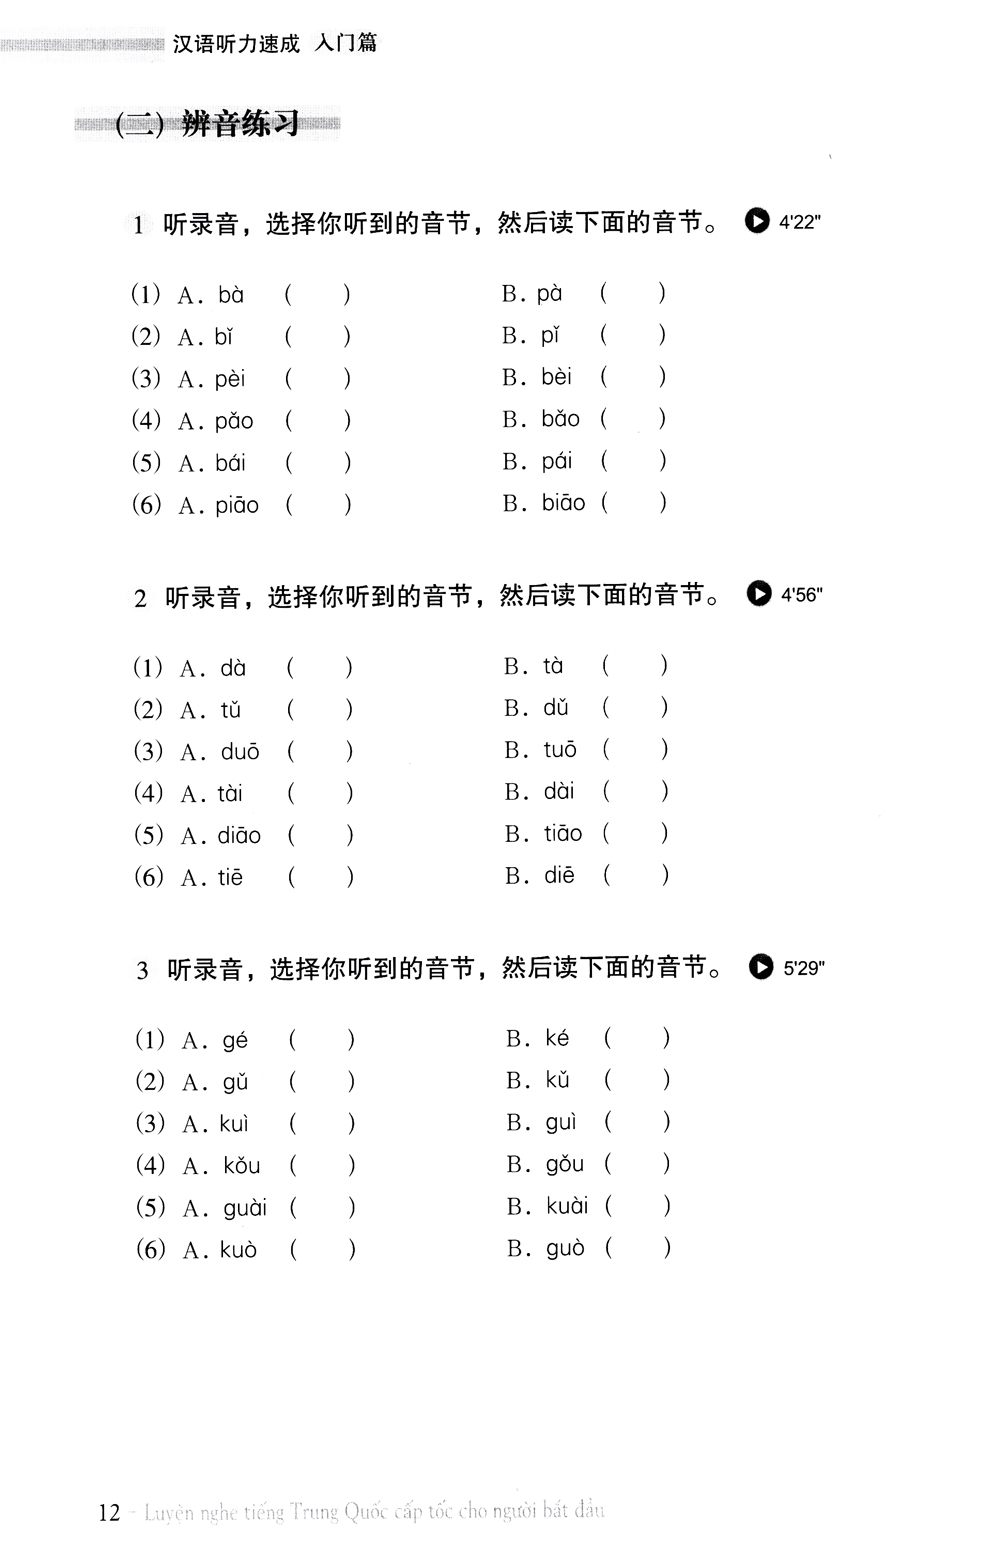 Luyện Nghe Tiếng Trung Quốc Cấp Tốc Cho Người Bắt Đầu Kèm CD PDF